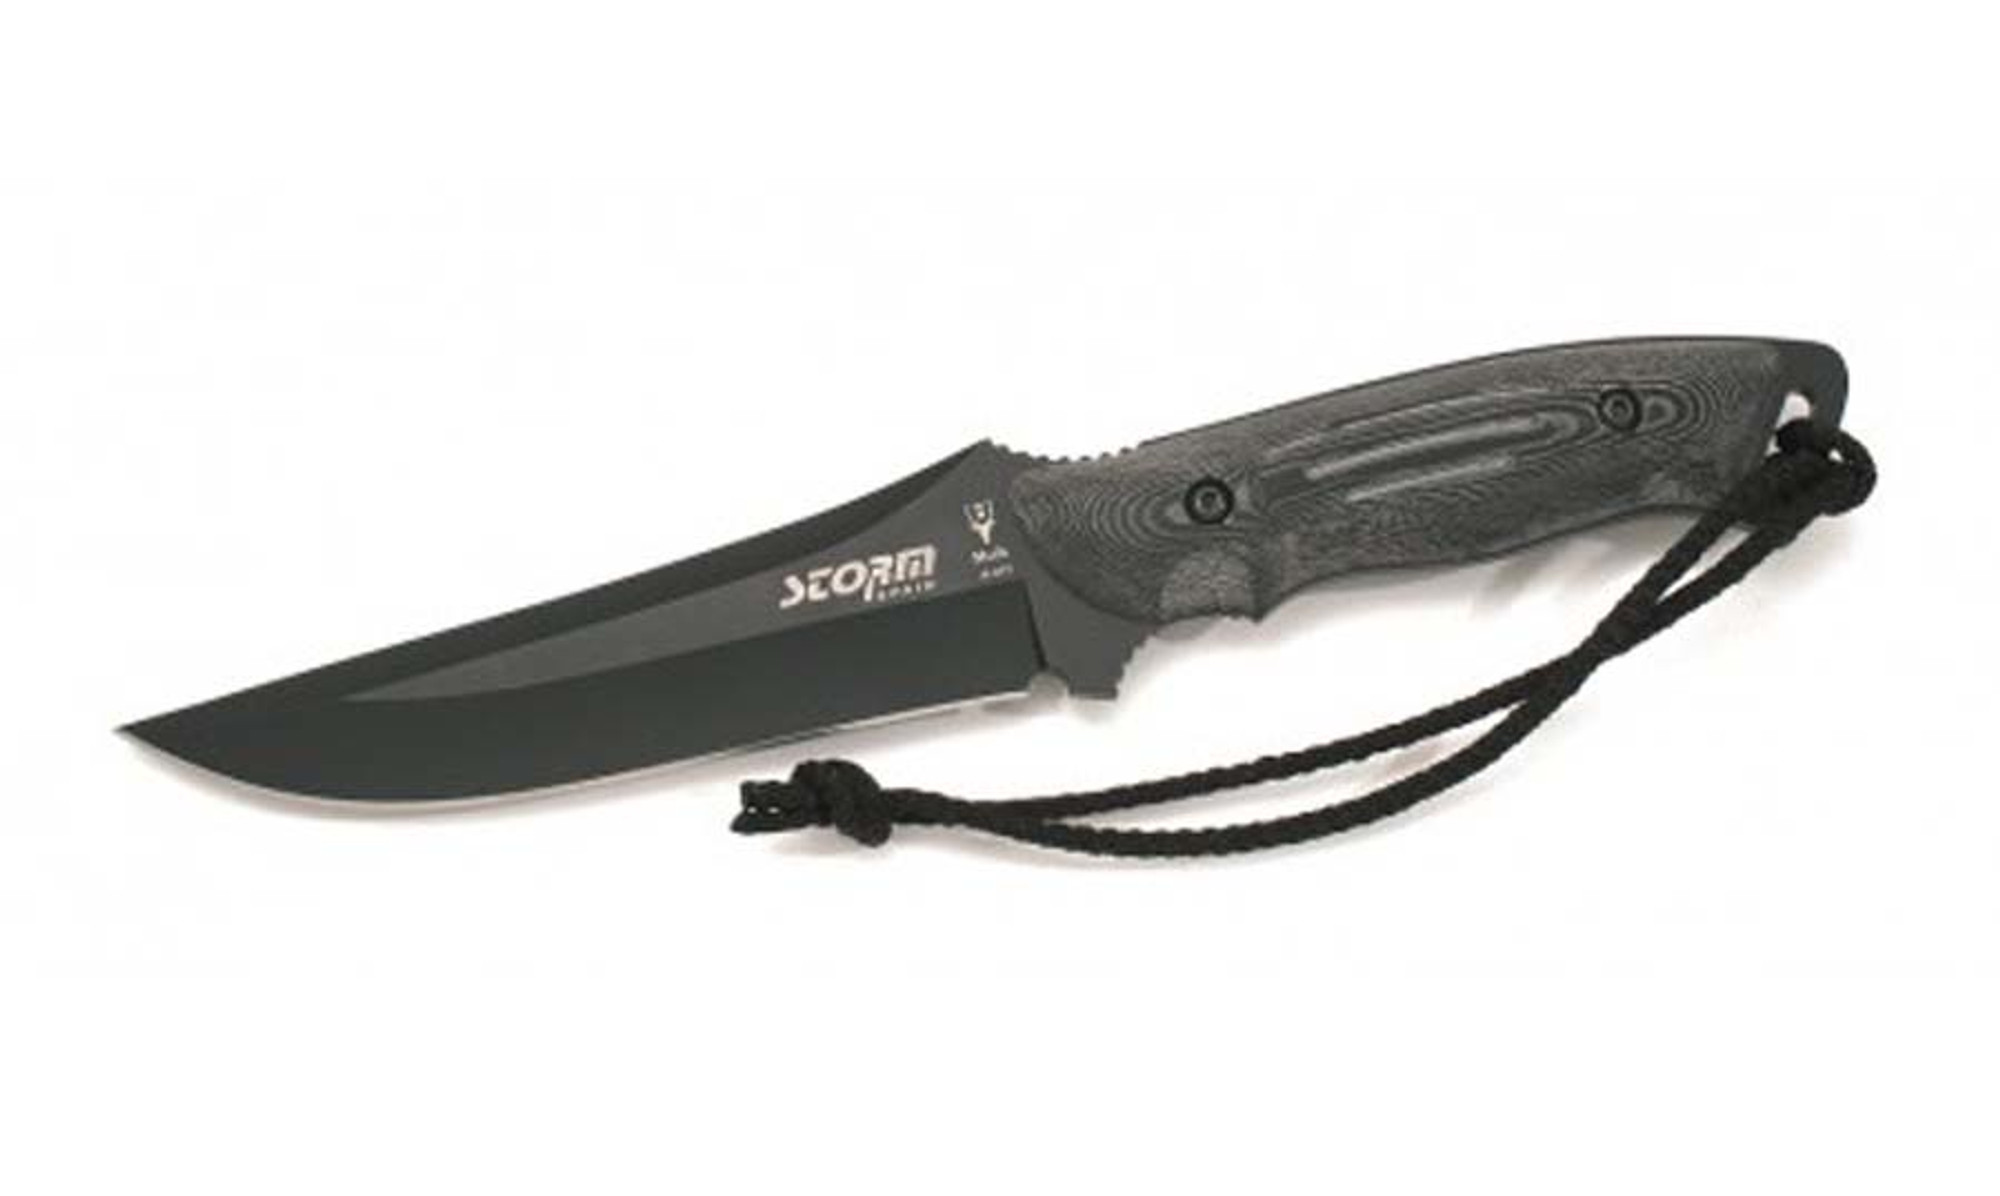 MUELA STORM-N, X50CrMoV15, 5-1/2" Fixed Blade Hunting Knife, Black Micarta Handle